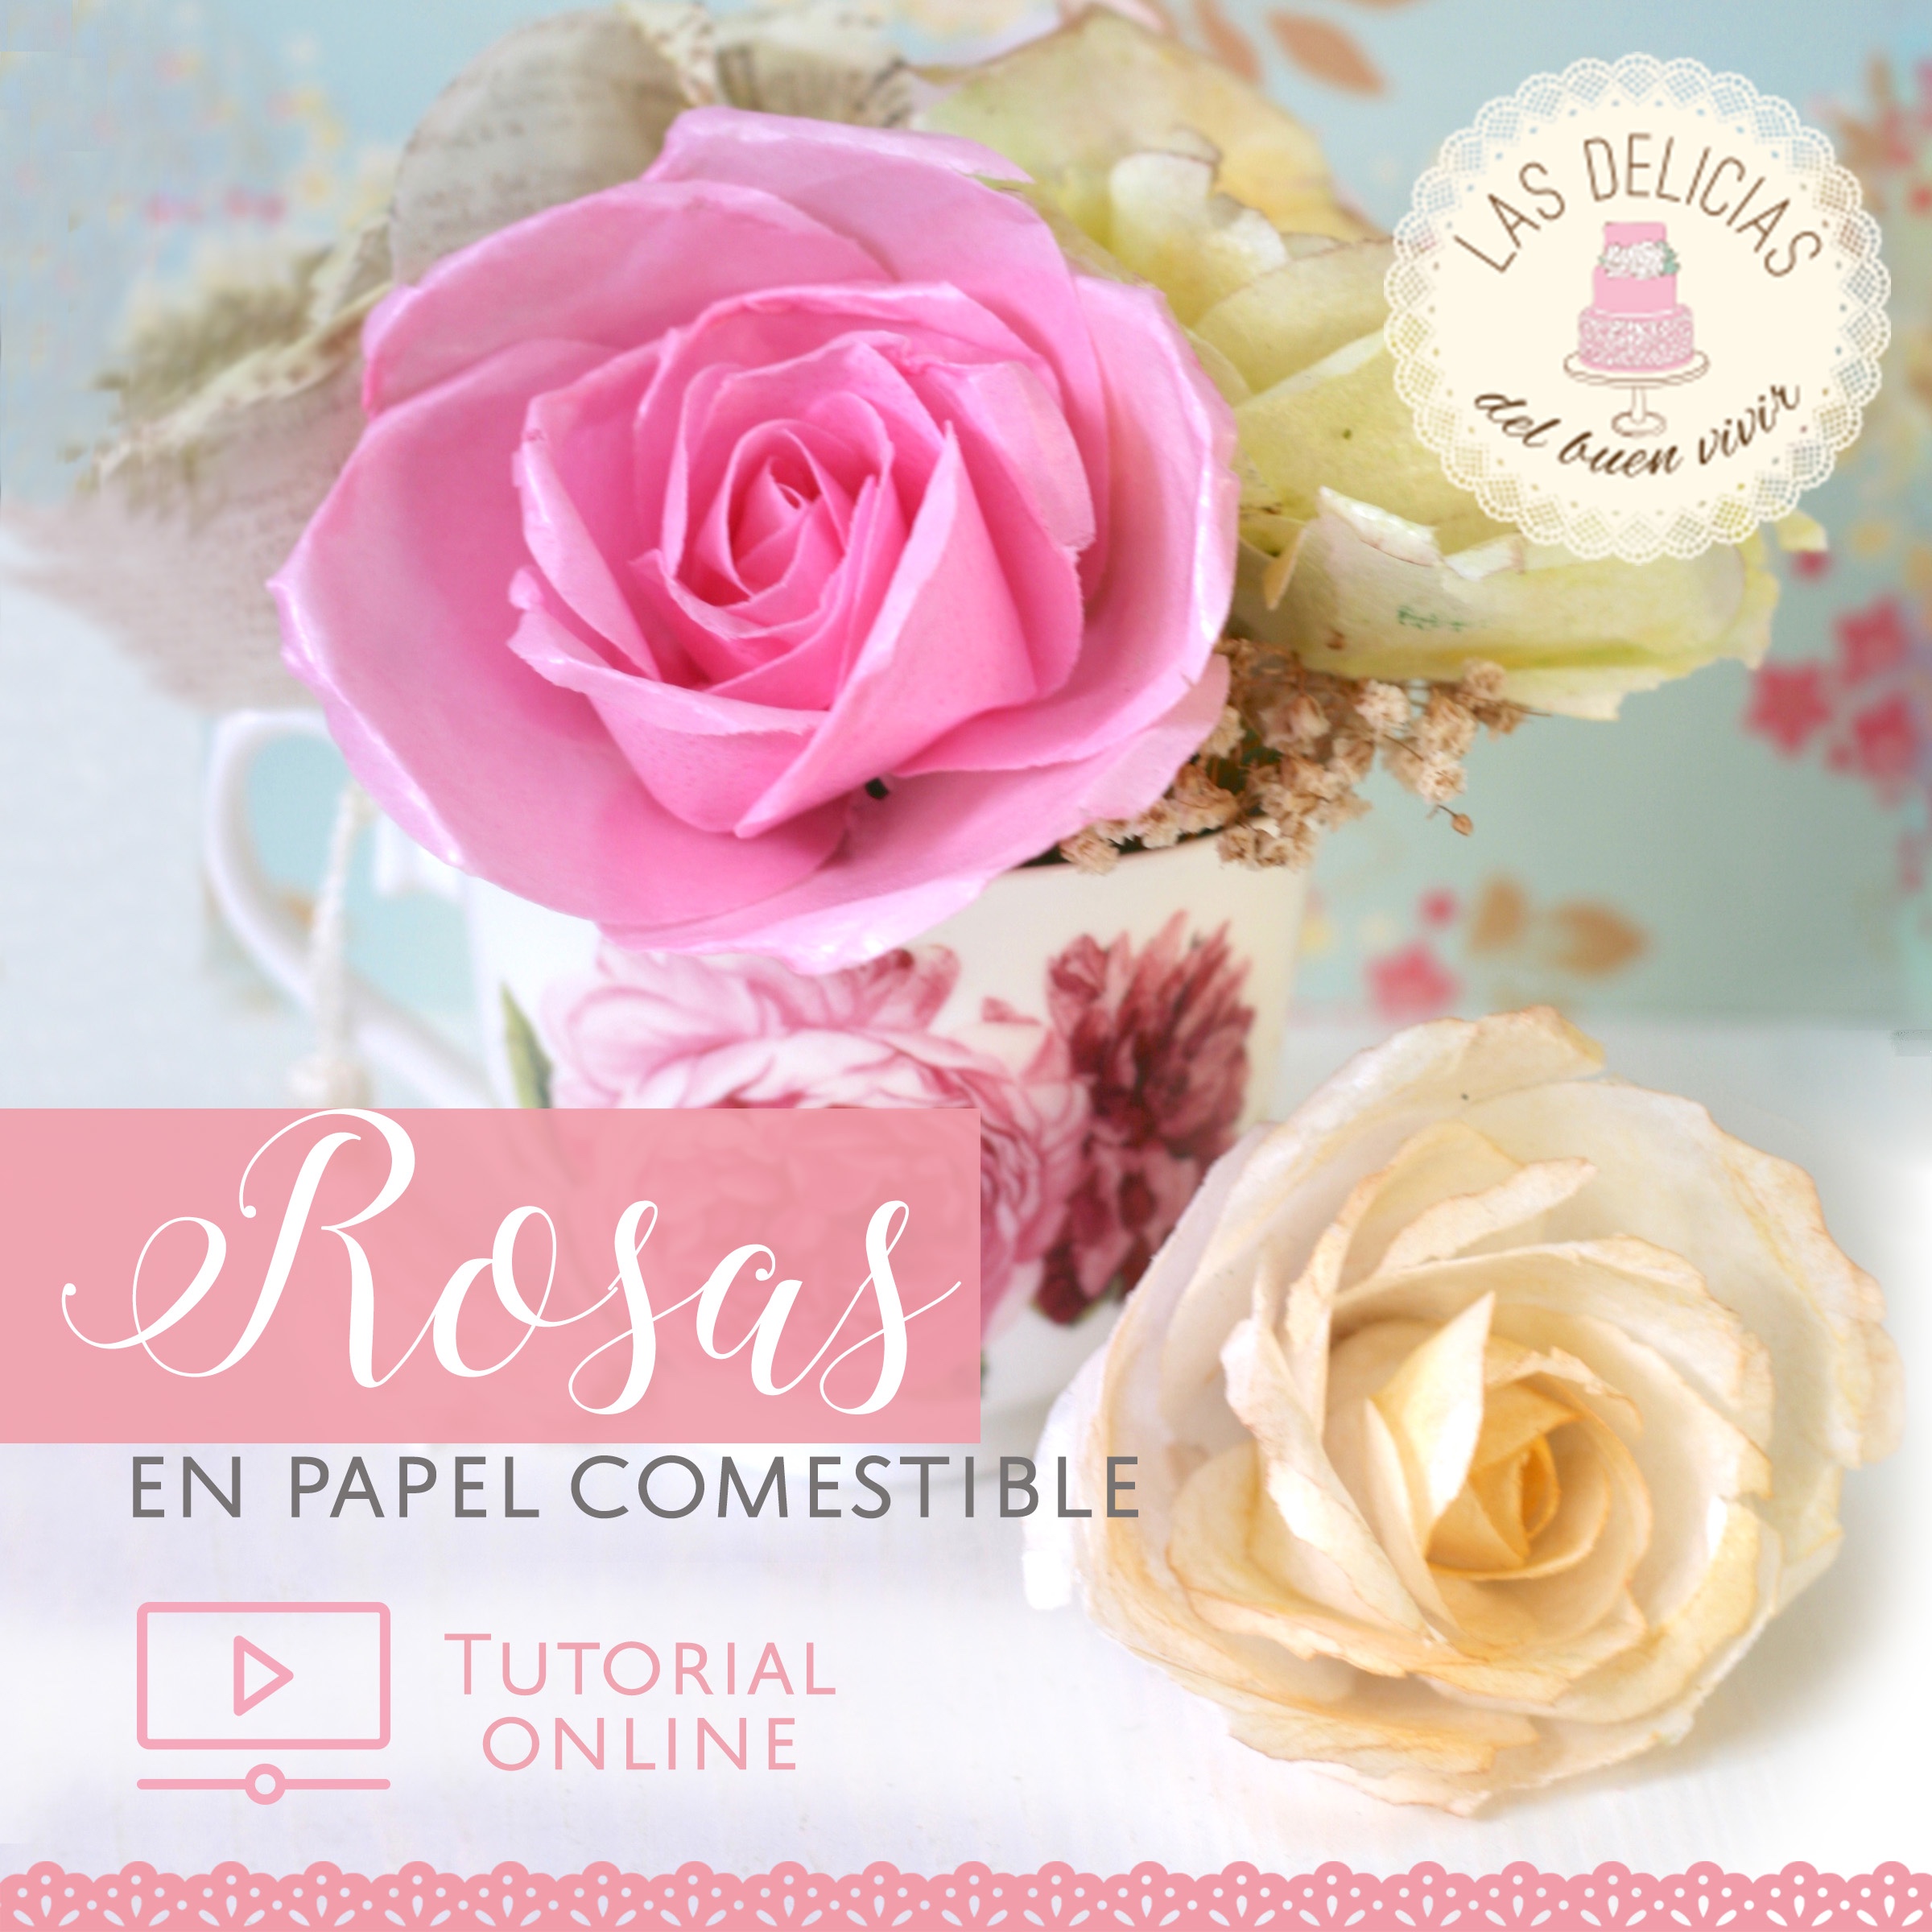 Rosas en papel comestible | Las Delicias de Vivir ONLINE